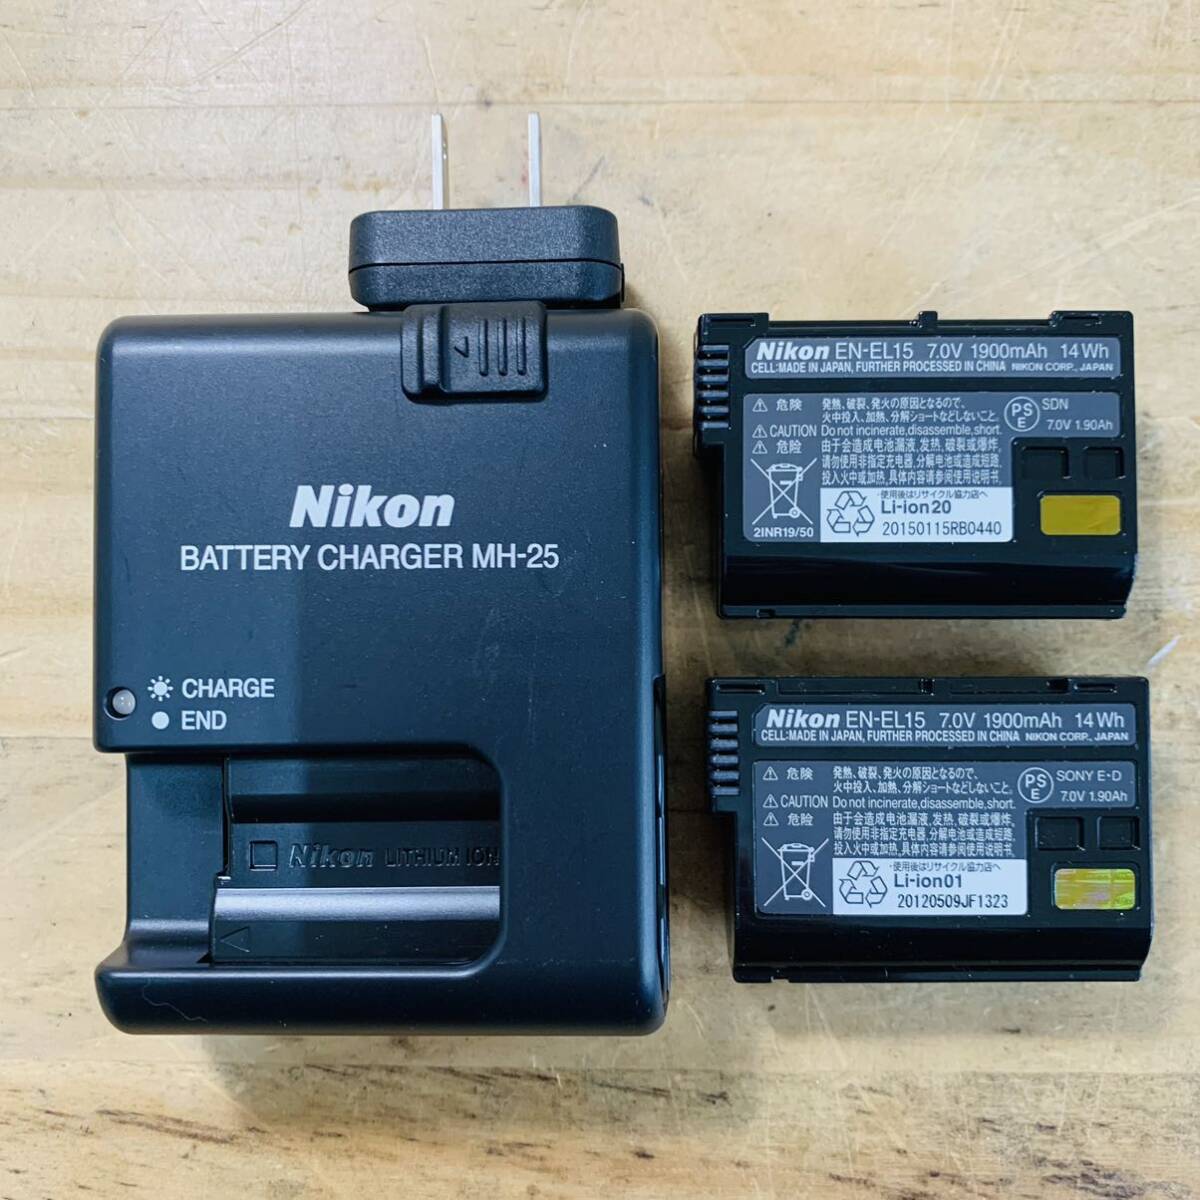 1T37227-50 Nikon ニコン MH-25 EN-EL15 充電器 バッテリーチャージャーの画像1